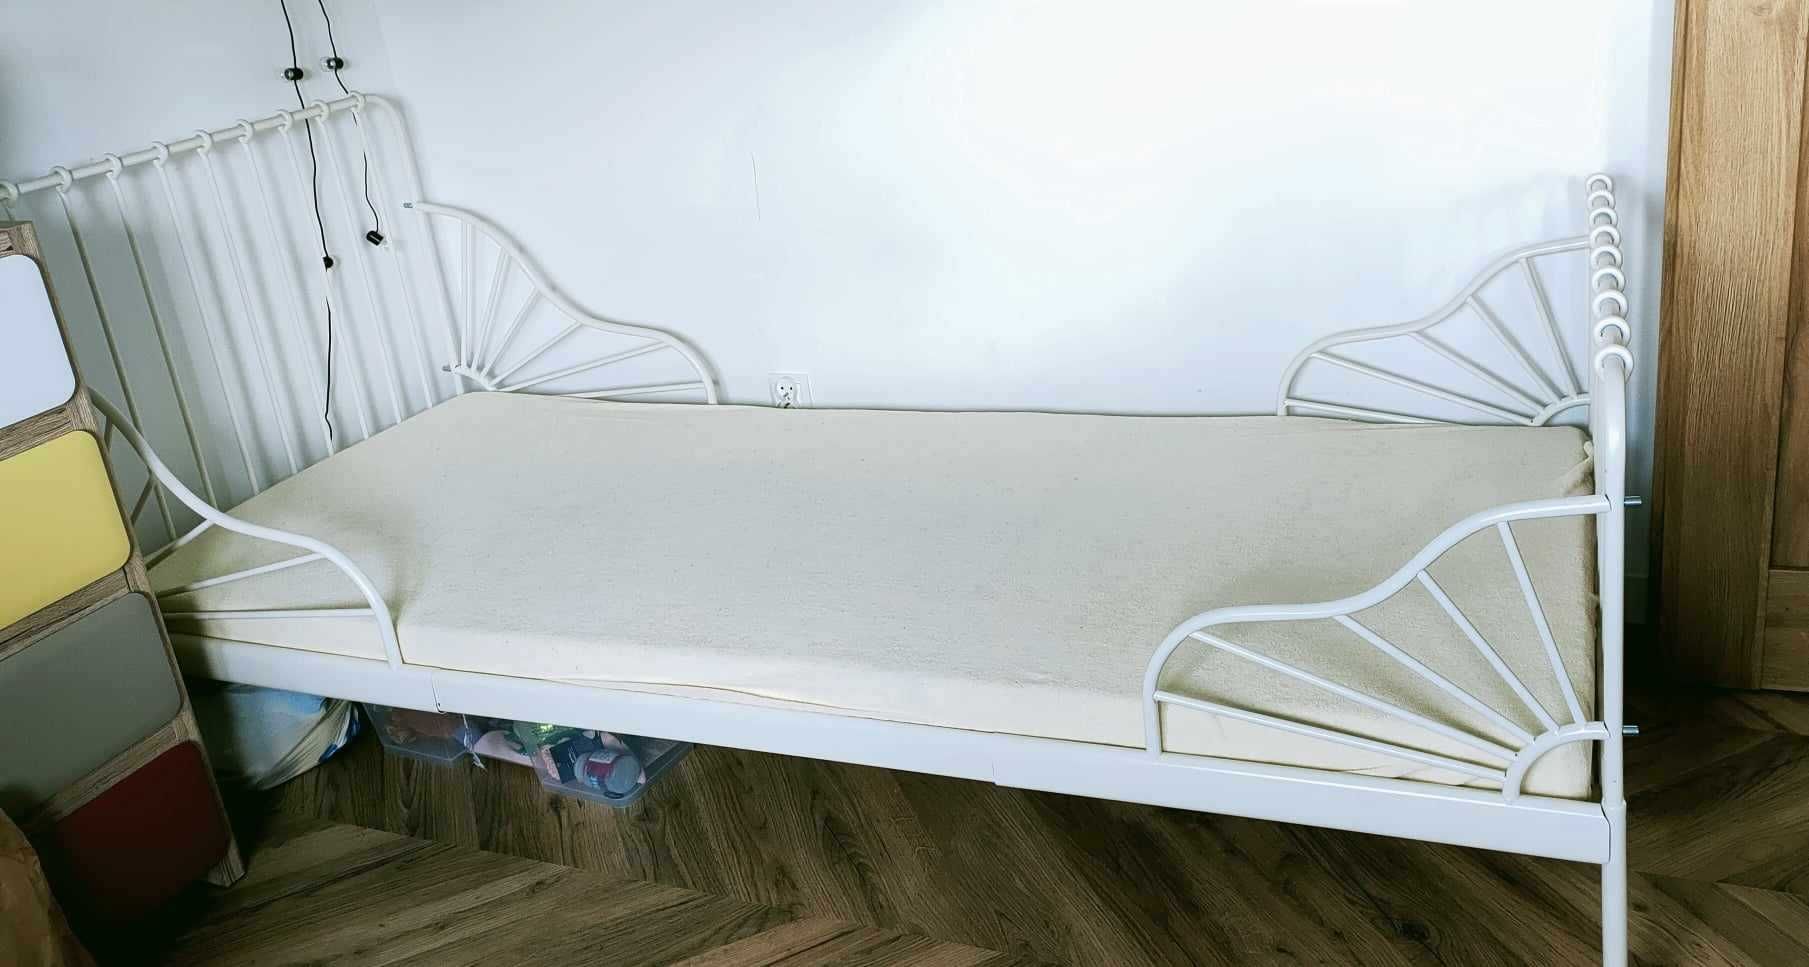 Łóżko rosnące Ikea Minnen